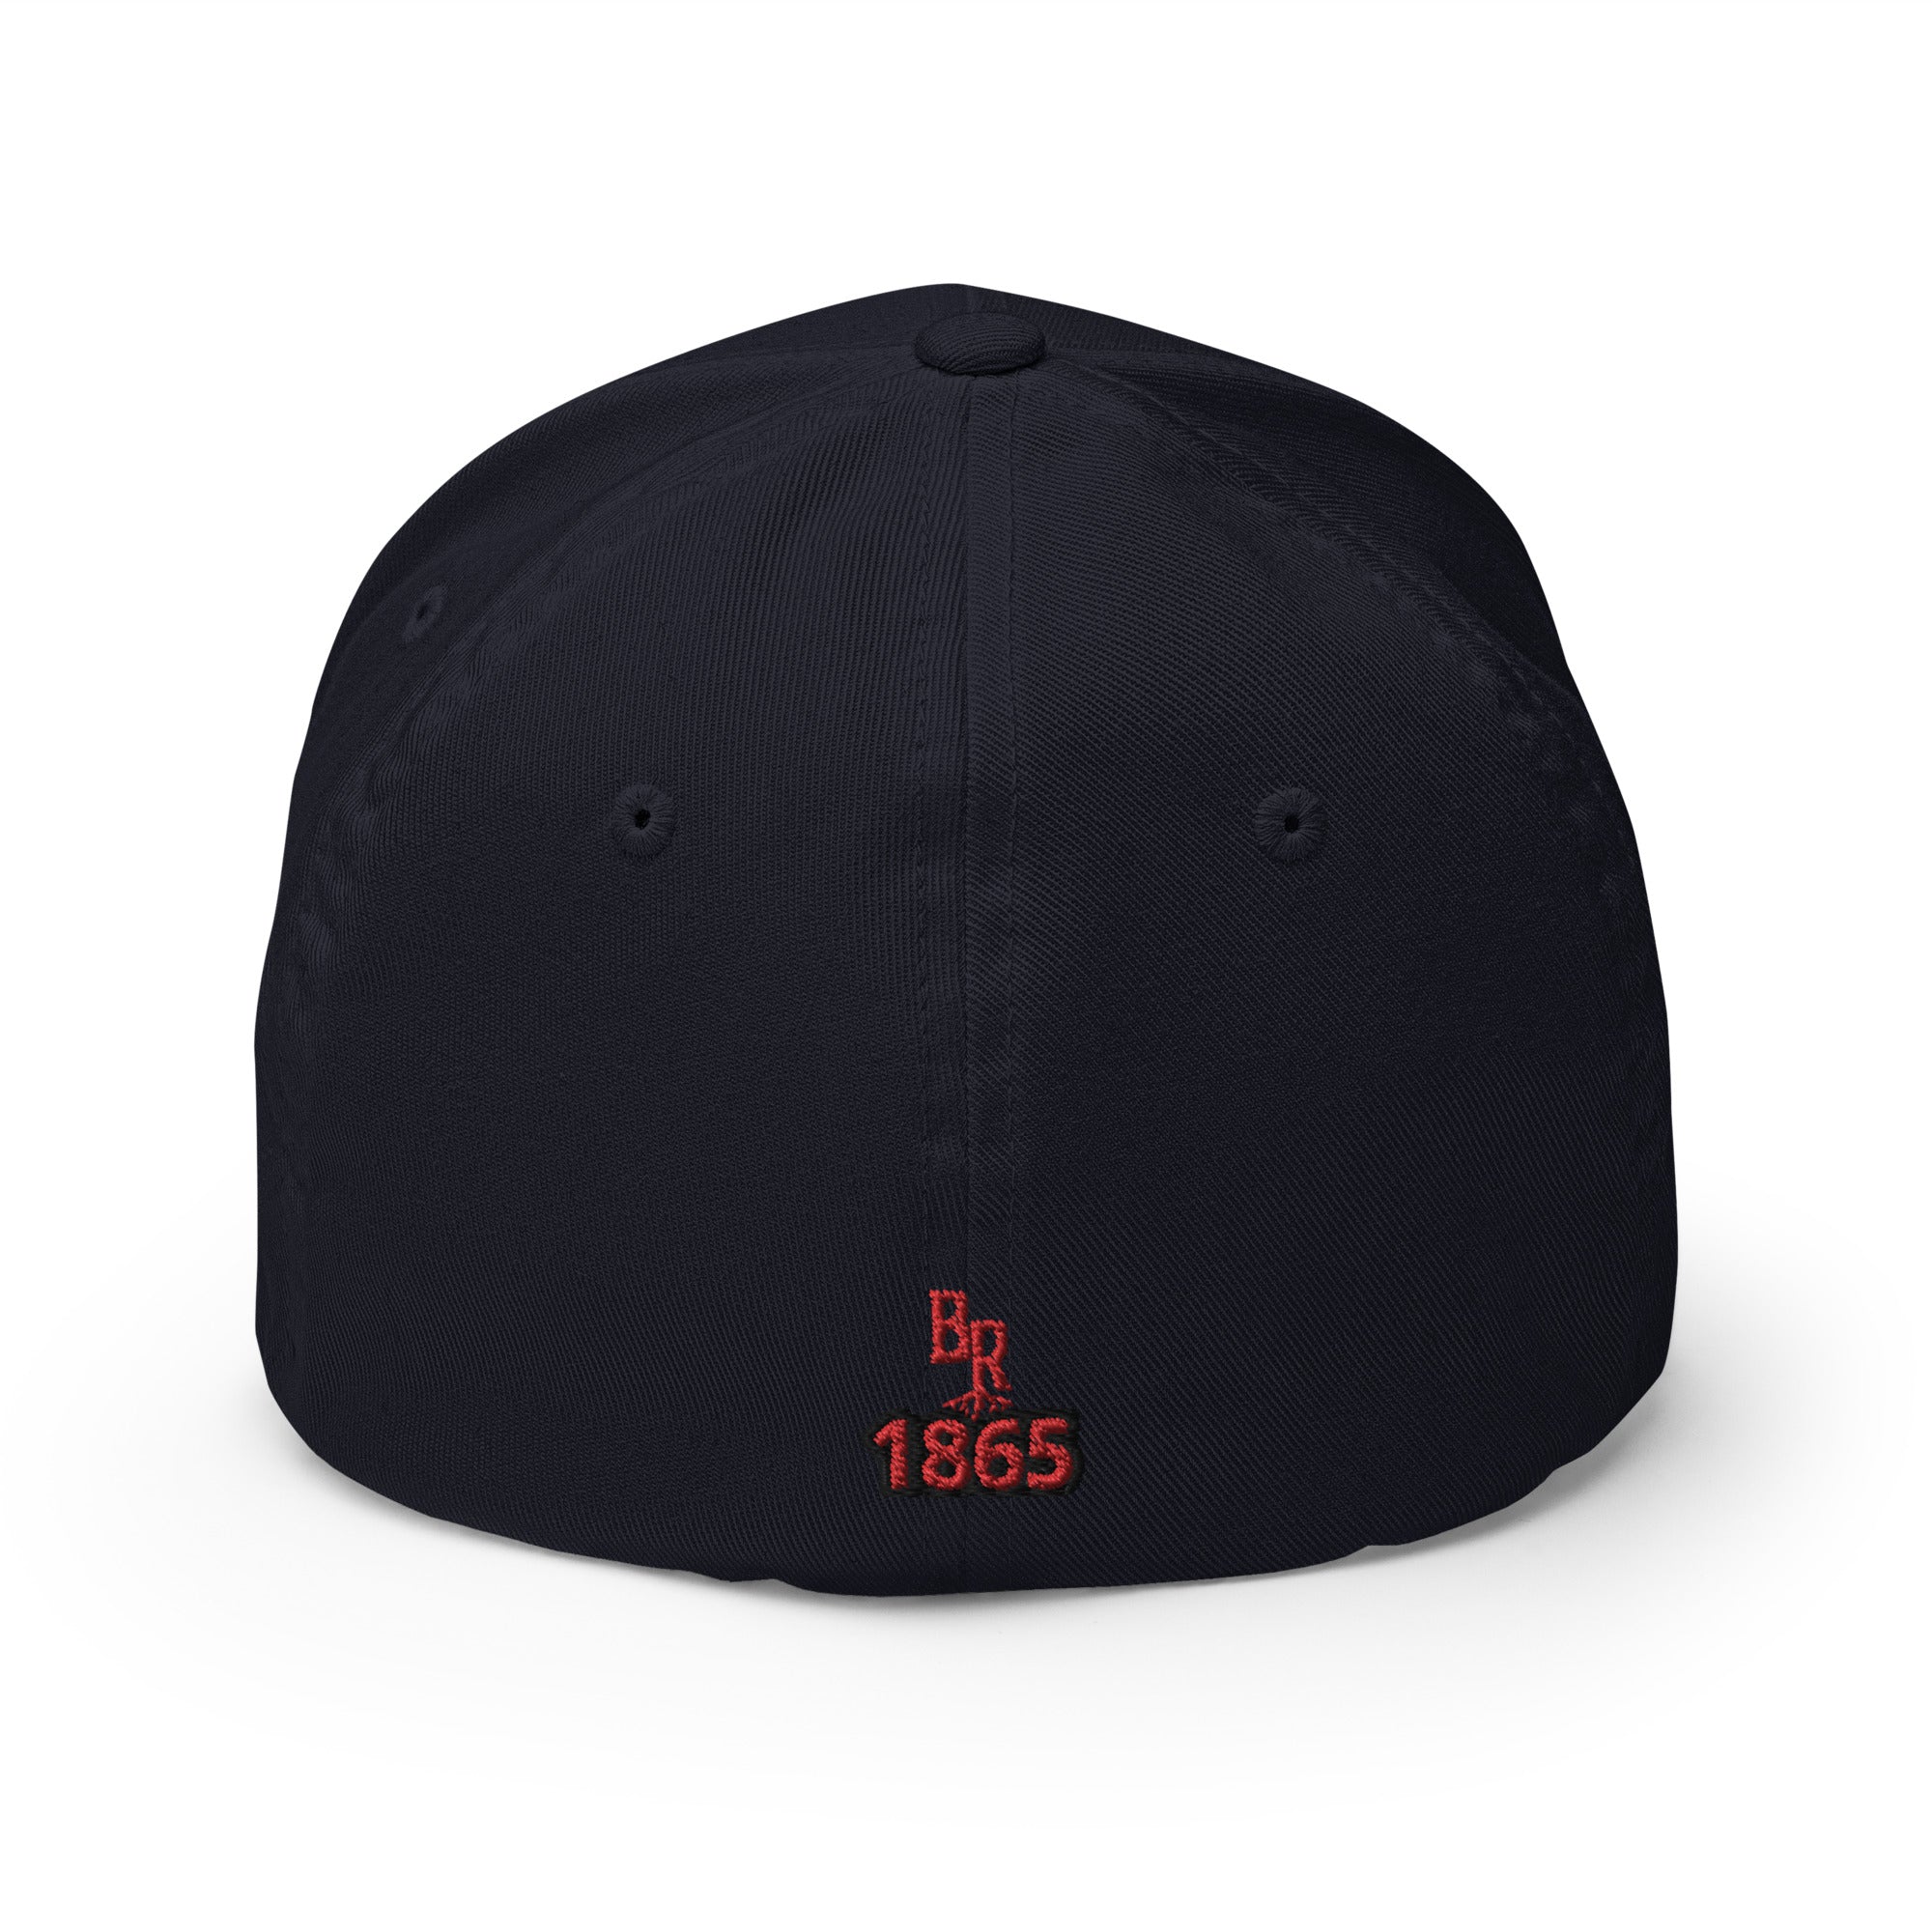 Freedom Day 1865 Black Camo Structured Twill Cap (Premium comfort)